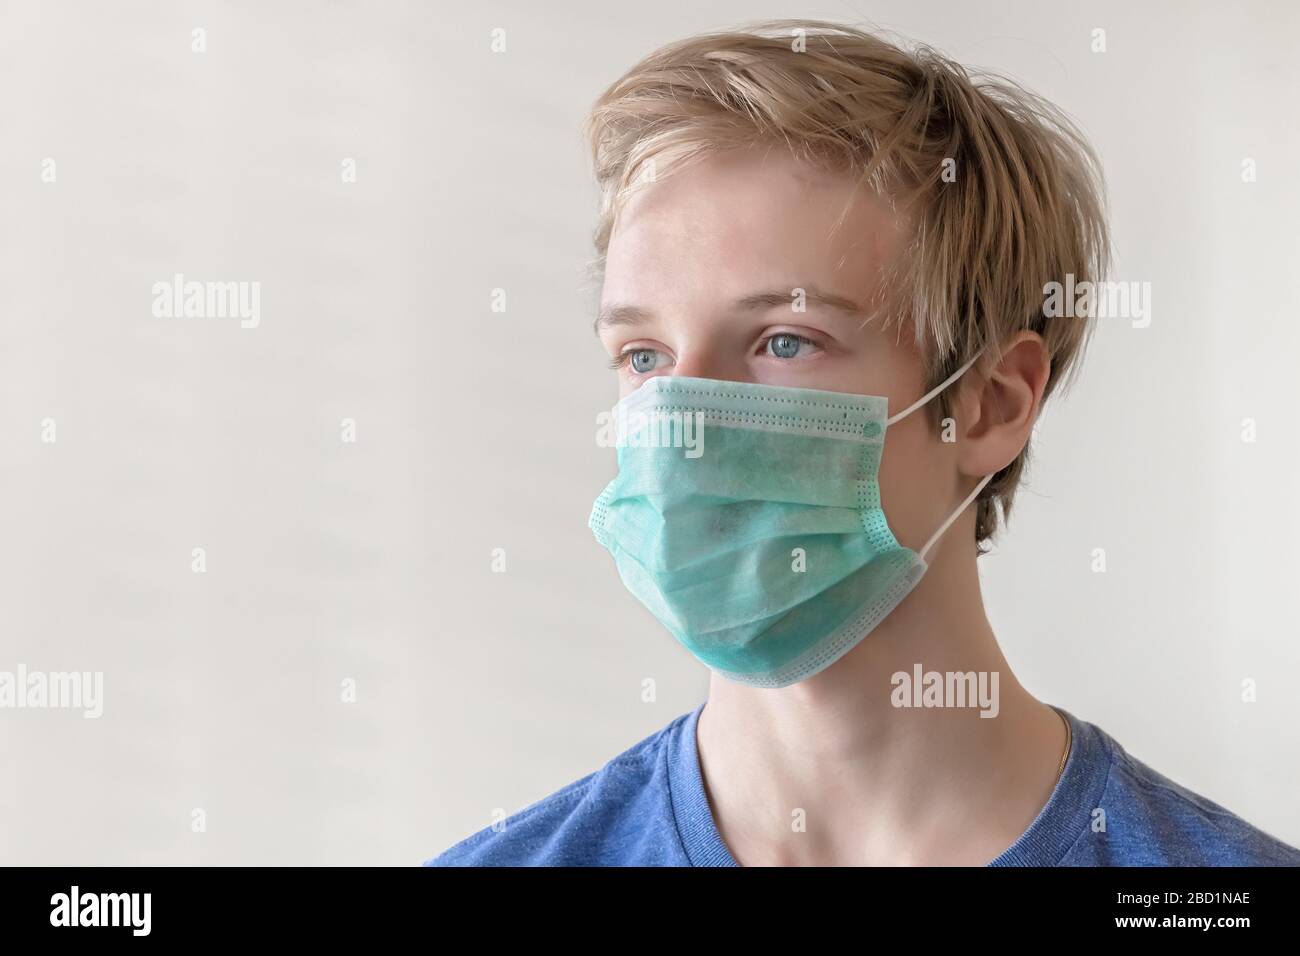 COVID-19 coronavirus. Ritratto di un giovane di 17 anni in maschera medica. Foto Stock